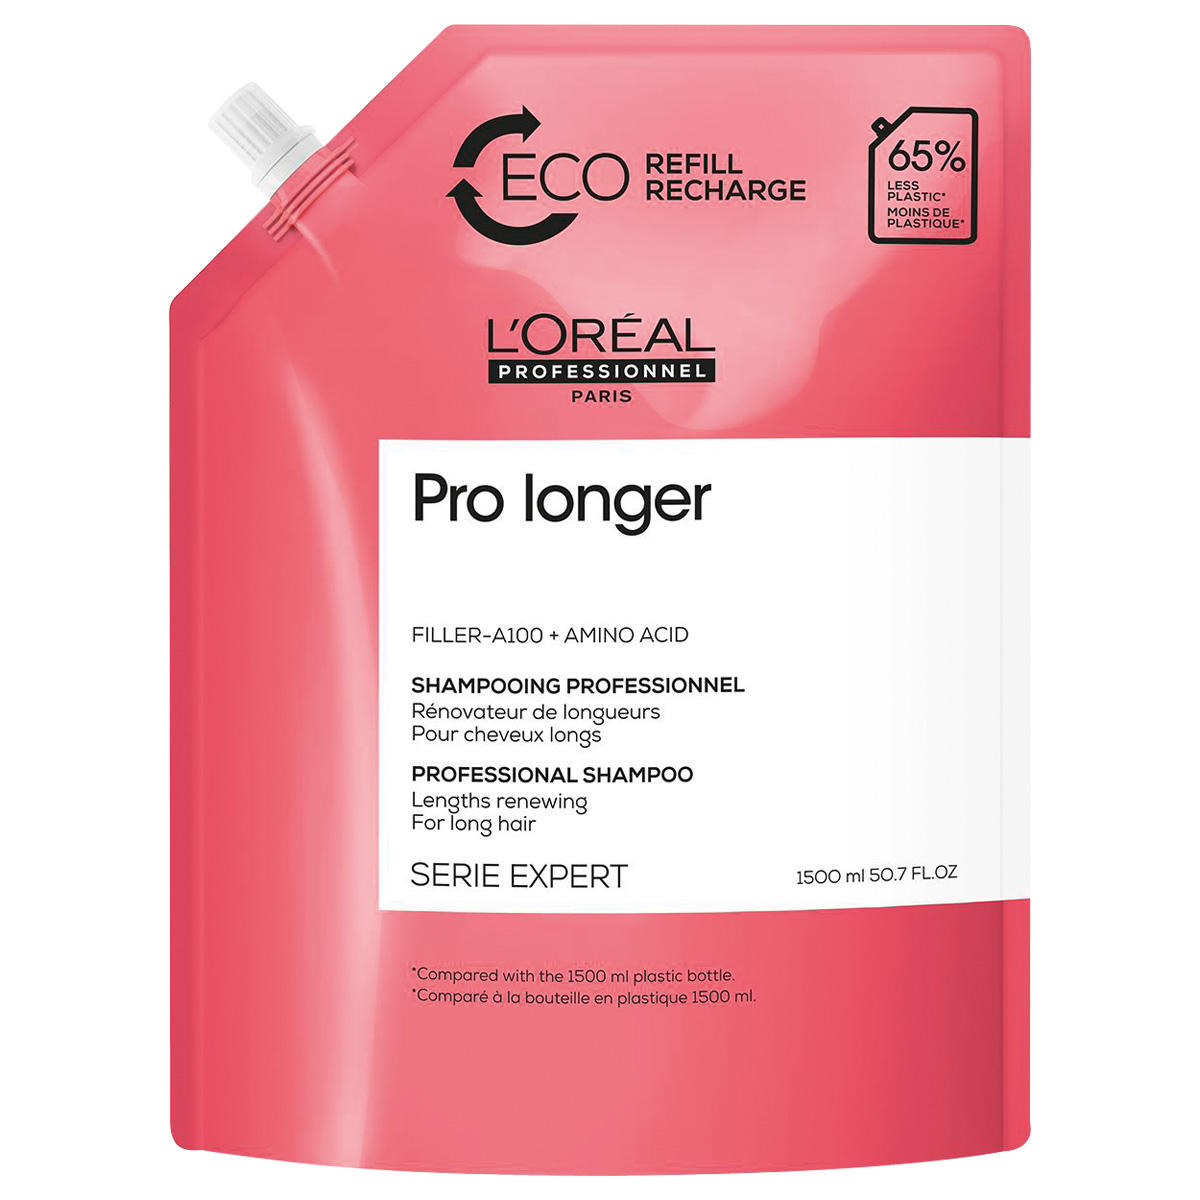 L'Oréal Professionnel Paris Serie Expert Pro Longer Professional Shampoo Refill 1,5 litre - 1